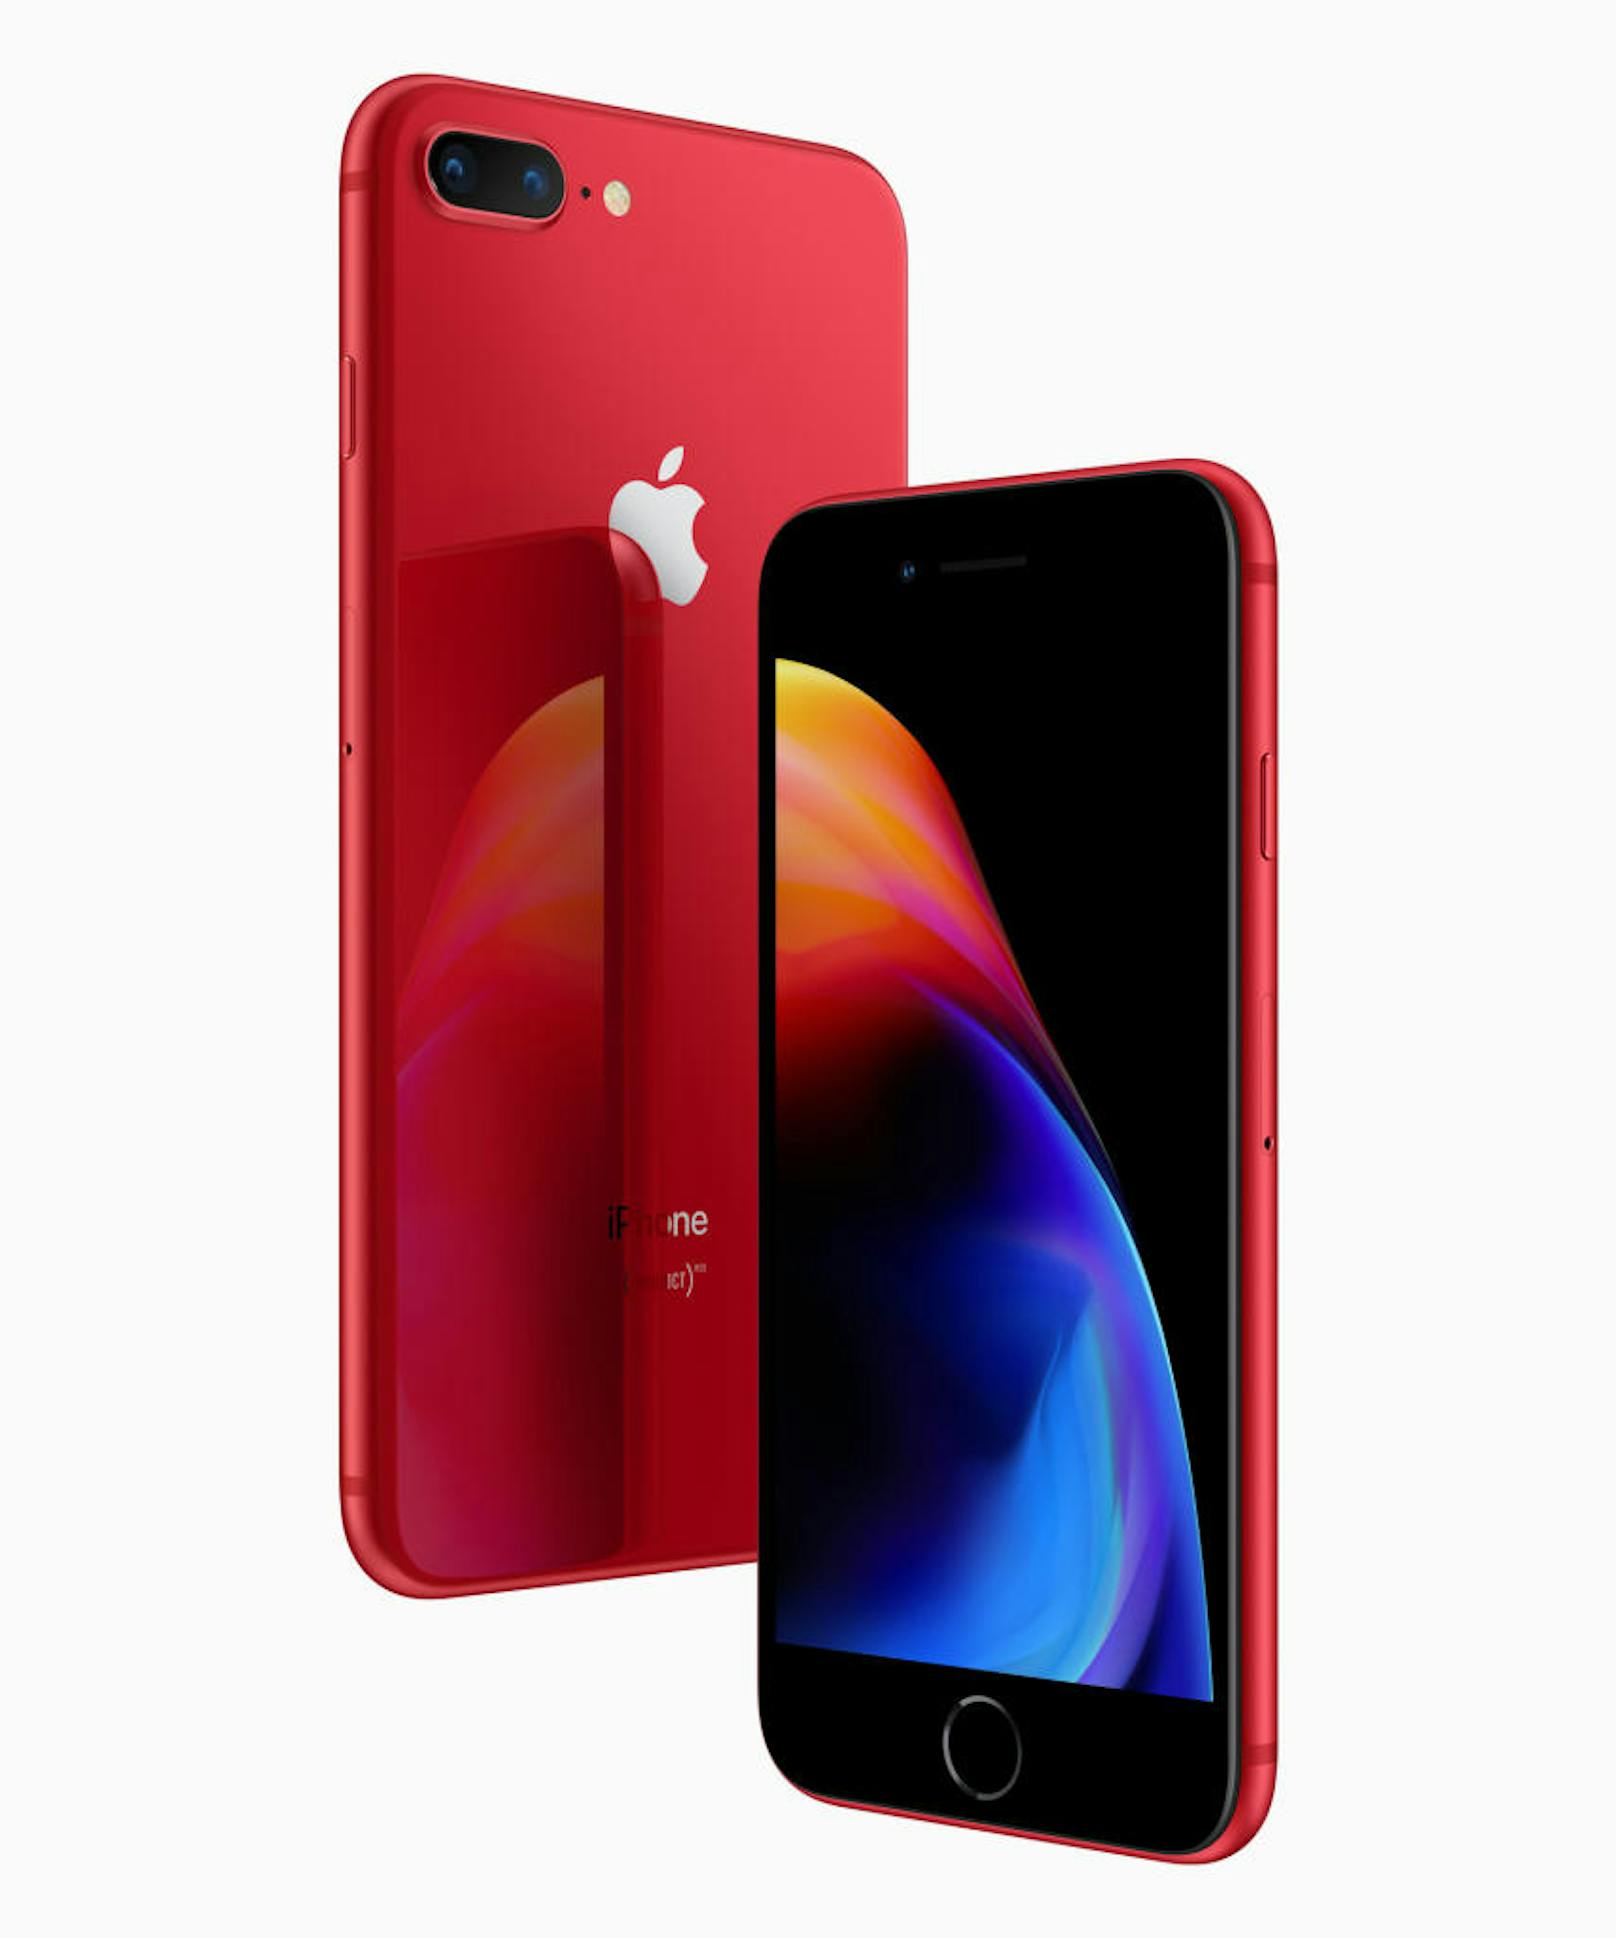 <b>09. April 2018:</b> Apple hat die iPhone 8 und iPhone 8 Plus (PRODUCT)RED Special Edition angekündigt. Beide Telefone haben ein jetzt rotes Gehäuse aus Glas mit einem passenden Aluminiumband und einer schwarzen Front. Die (PRODUCT)RED iPhone Special Edition wird ab 10. April zur Onlinebestellung und ab 13. April in Stores in ausgewählten Ländern und Regionen verfügbar sein. Die Modelle gibt es mit 64 und 256 GB internem Speicher. Startpreis: 799 Euro. Das neue (PRODUCT)RED iPhone X Leder Folio kostet 109 Euro.